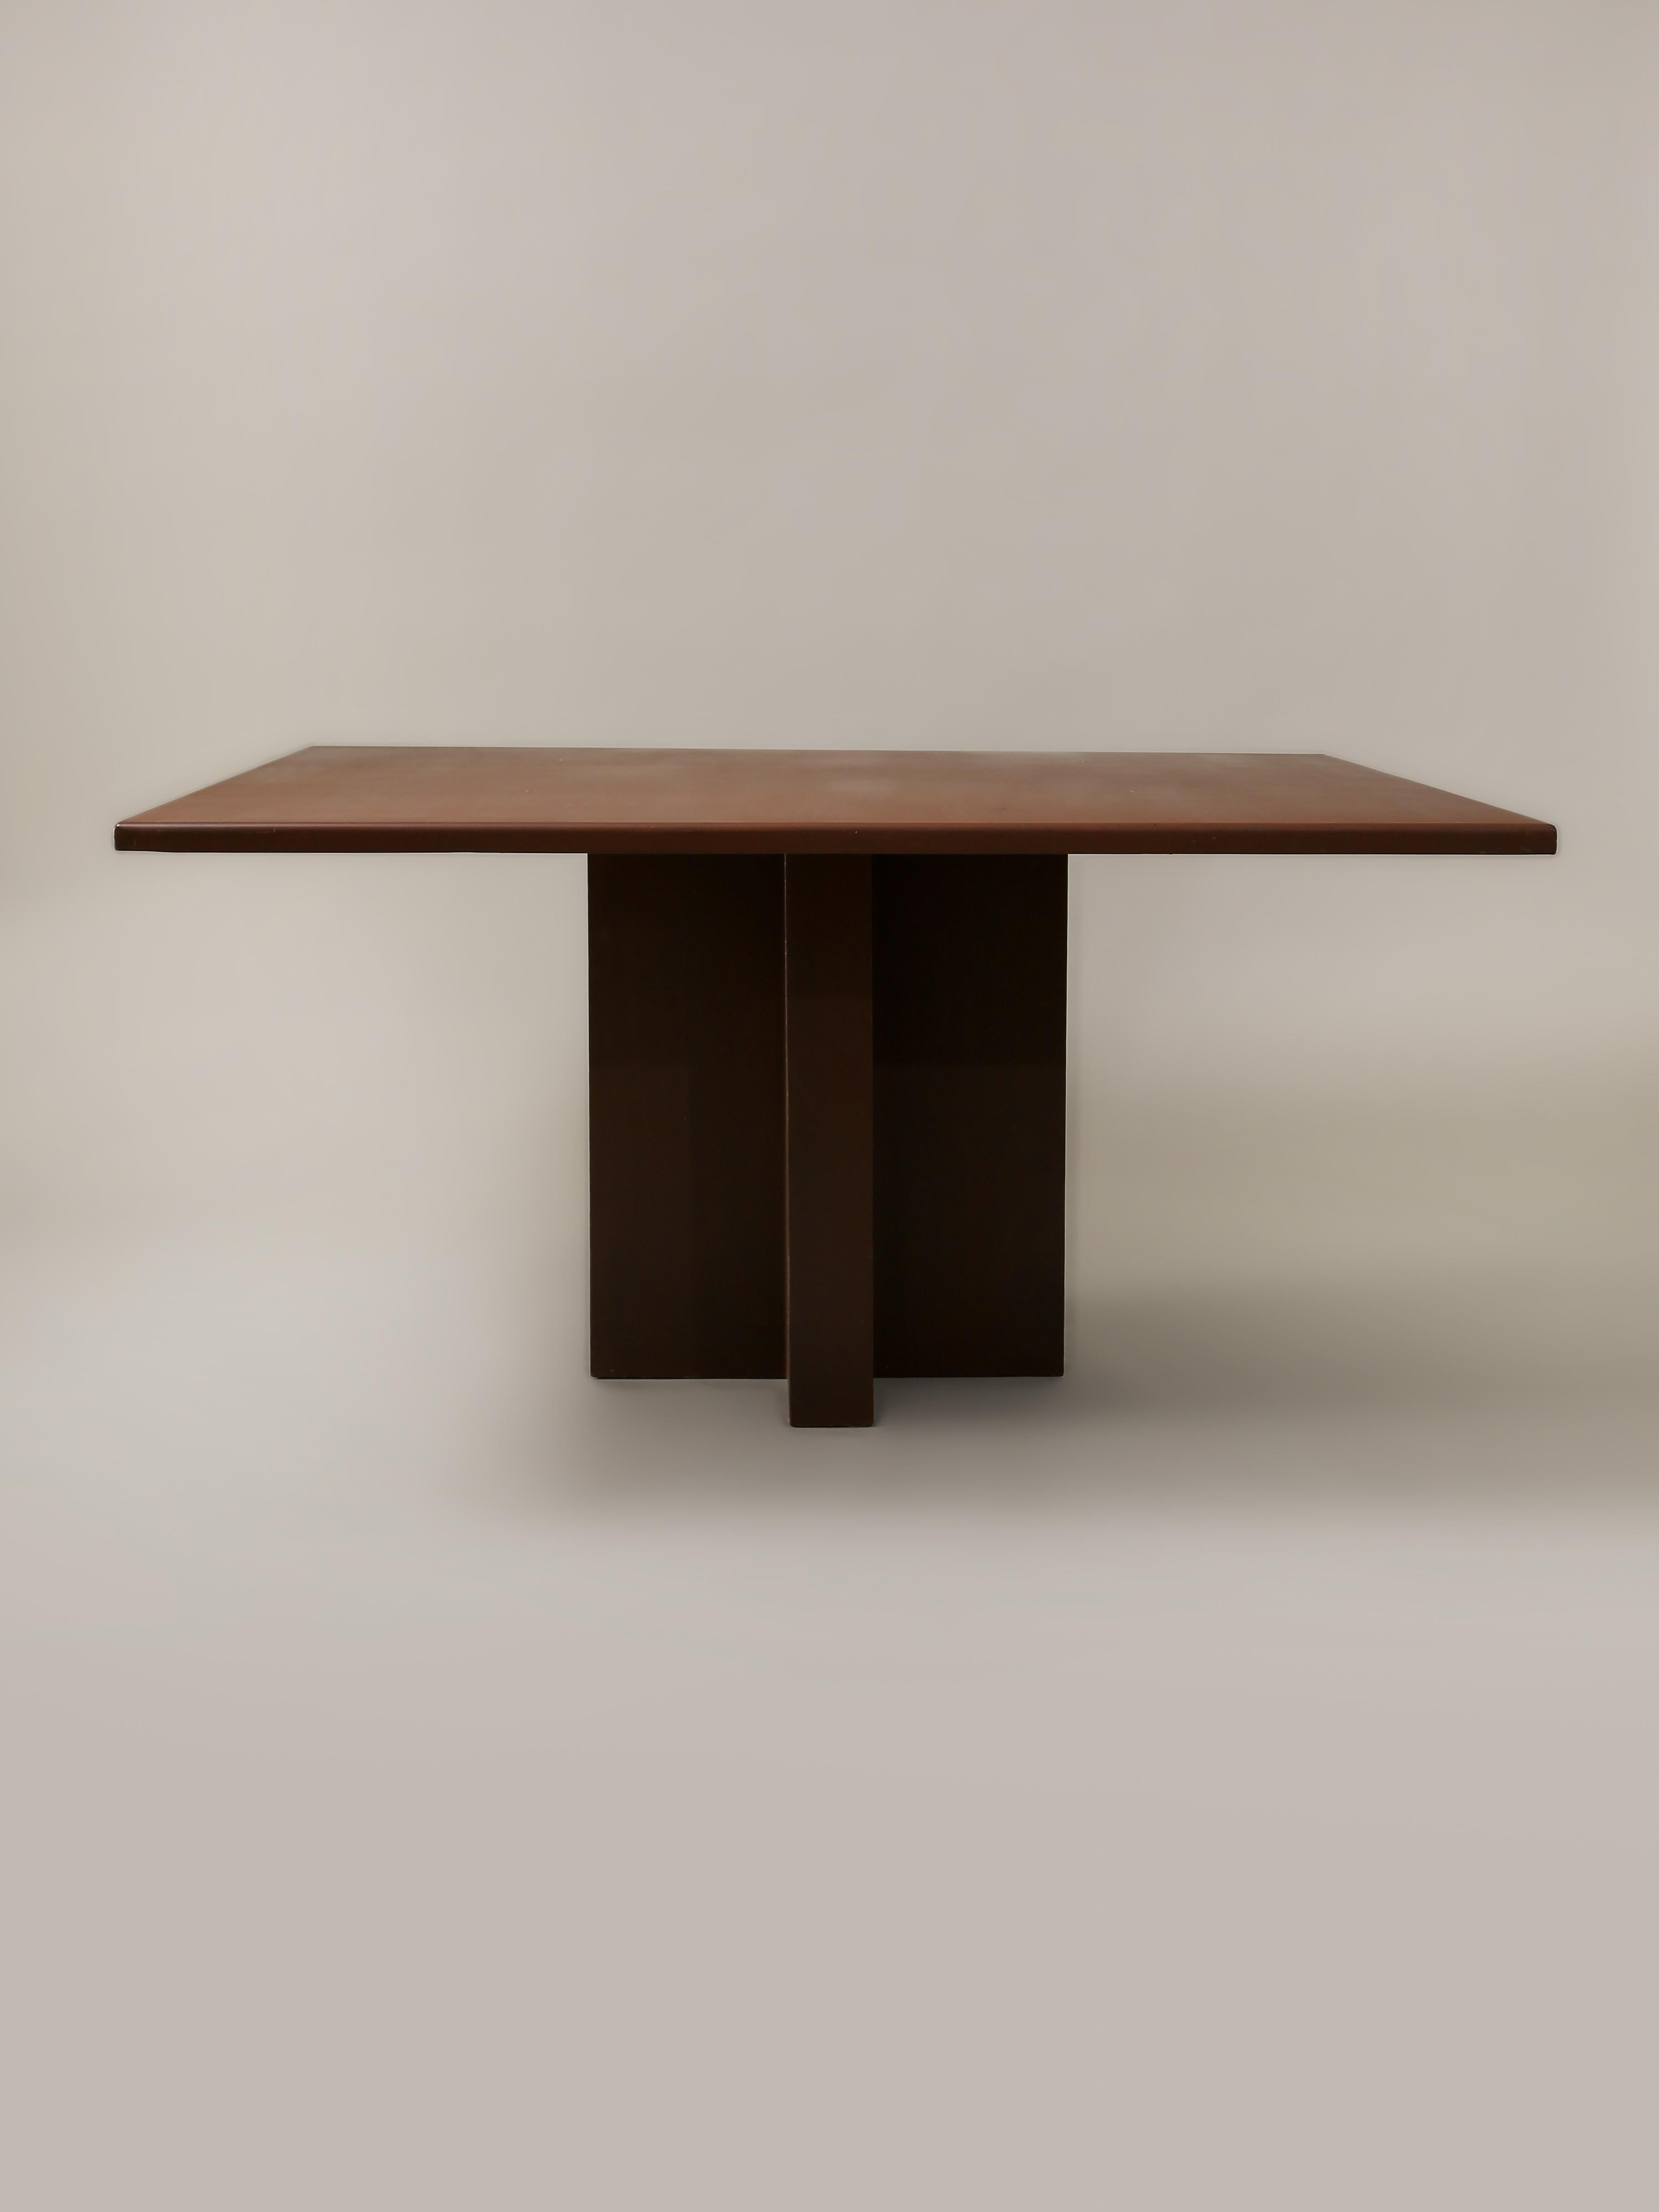 Dieser pulverbeschichtete Stahltisch wurde von dem verstorbenen Landschaftsarchitekten, Bildhauer und Möbeldesigner Jack A. Chandler entworfen. Die quadratische Tischplatte wird von einem Kreuzsockel getragen.

Gesamtbreite: 60